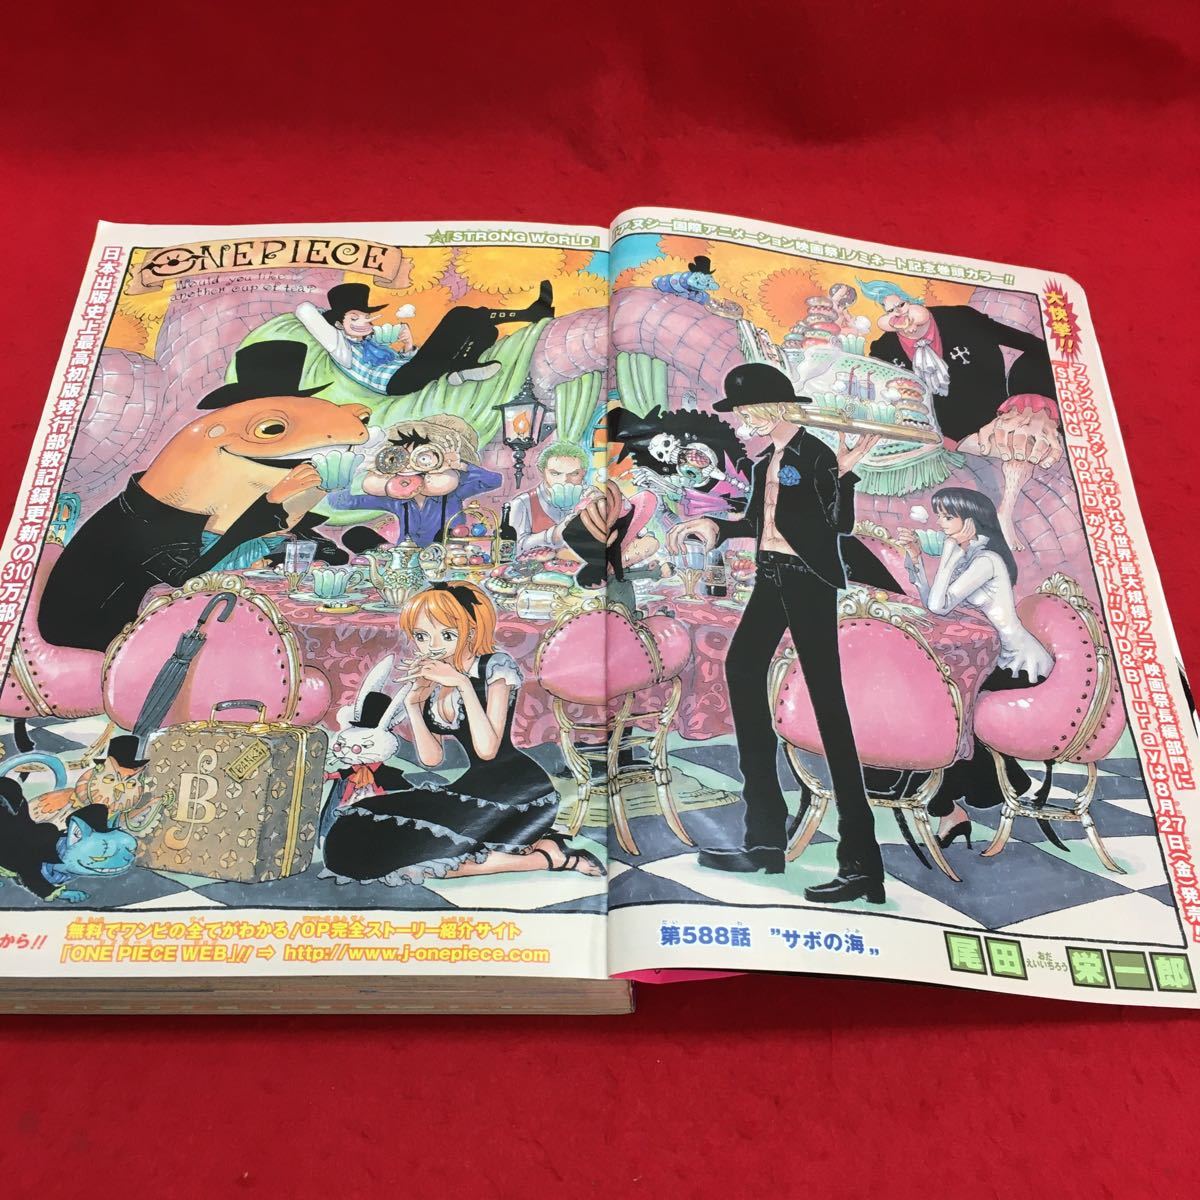 B 321 週刊少年ジャンプ 28号 巻頭カラー One Piece Naruto ぬらりひょんの孫 10年6月28日発行 集英社 7 少年ジャンプ 売買されたオークション情報 Yahooの商品情報をアーカイブ公開 オークファン Aucfan Com